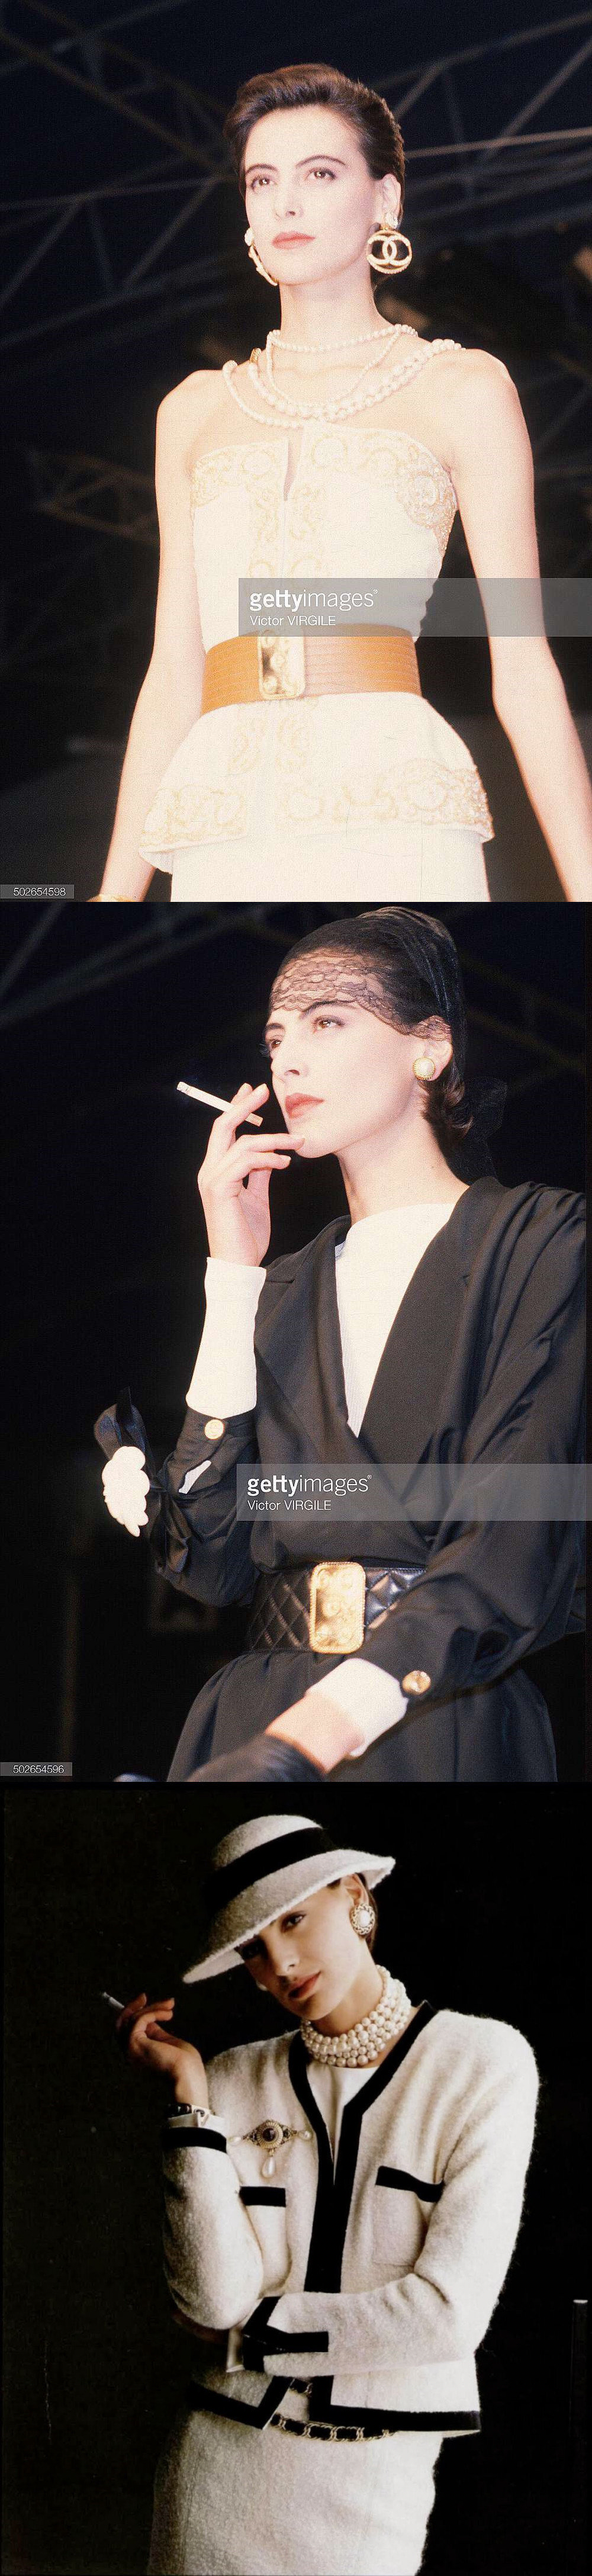 上世纪80年代法国知名度最高的名模,chanel历史上第一位专属模特,曾